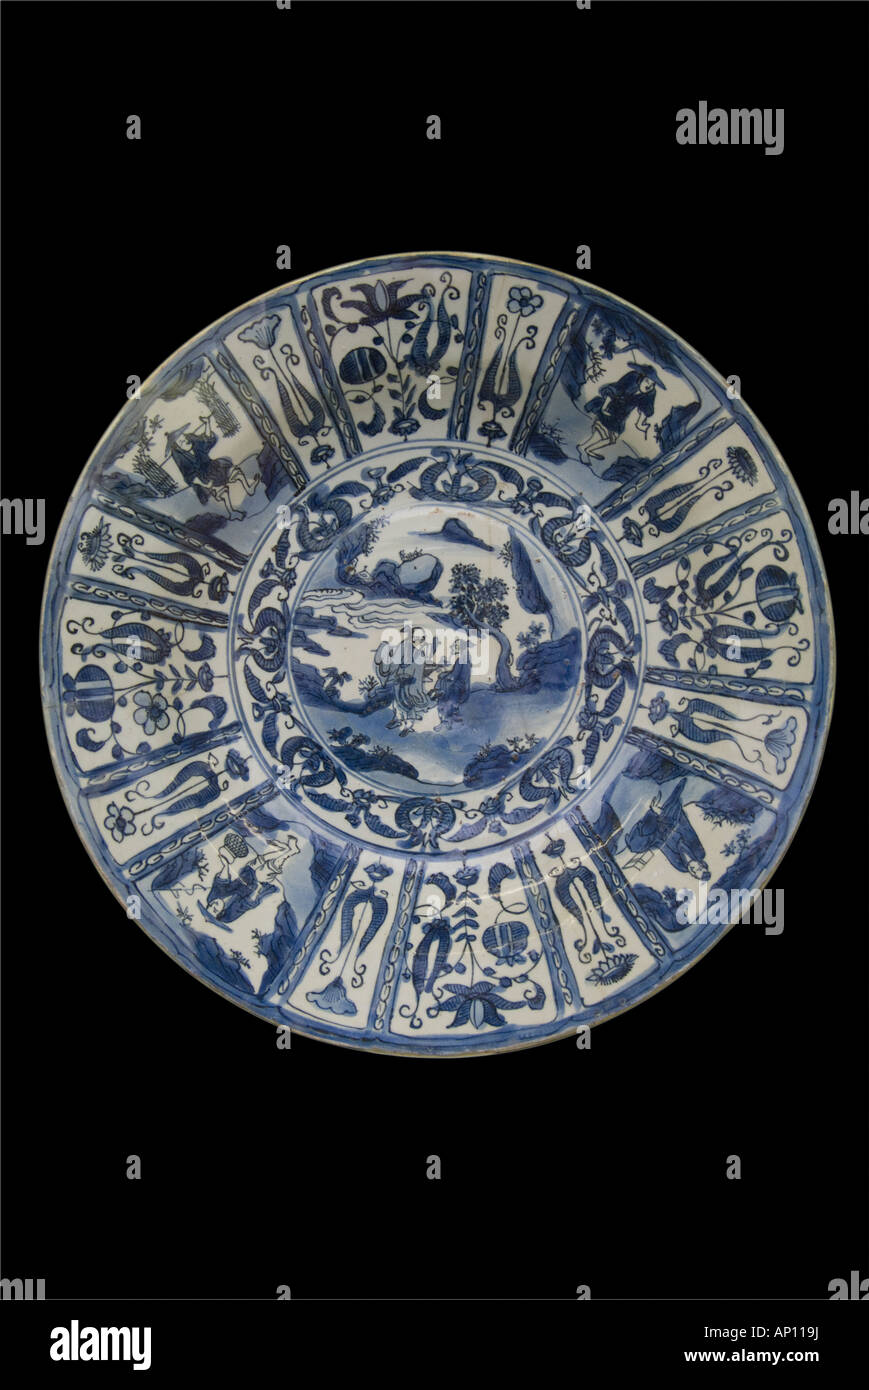 Plaque en céramique de porcelaine de la dynastie Ming, l'eau des cours d'eau chinois jardin balance symétrie harmonie grâce au nord-est de l'Asie Asie Chine Banque D'Images